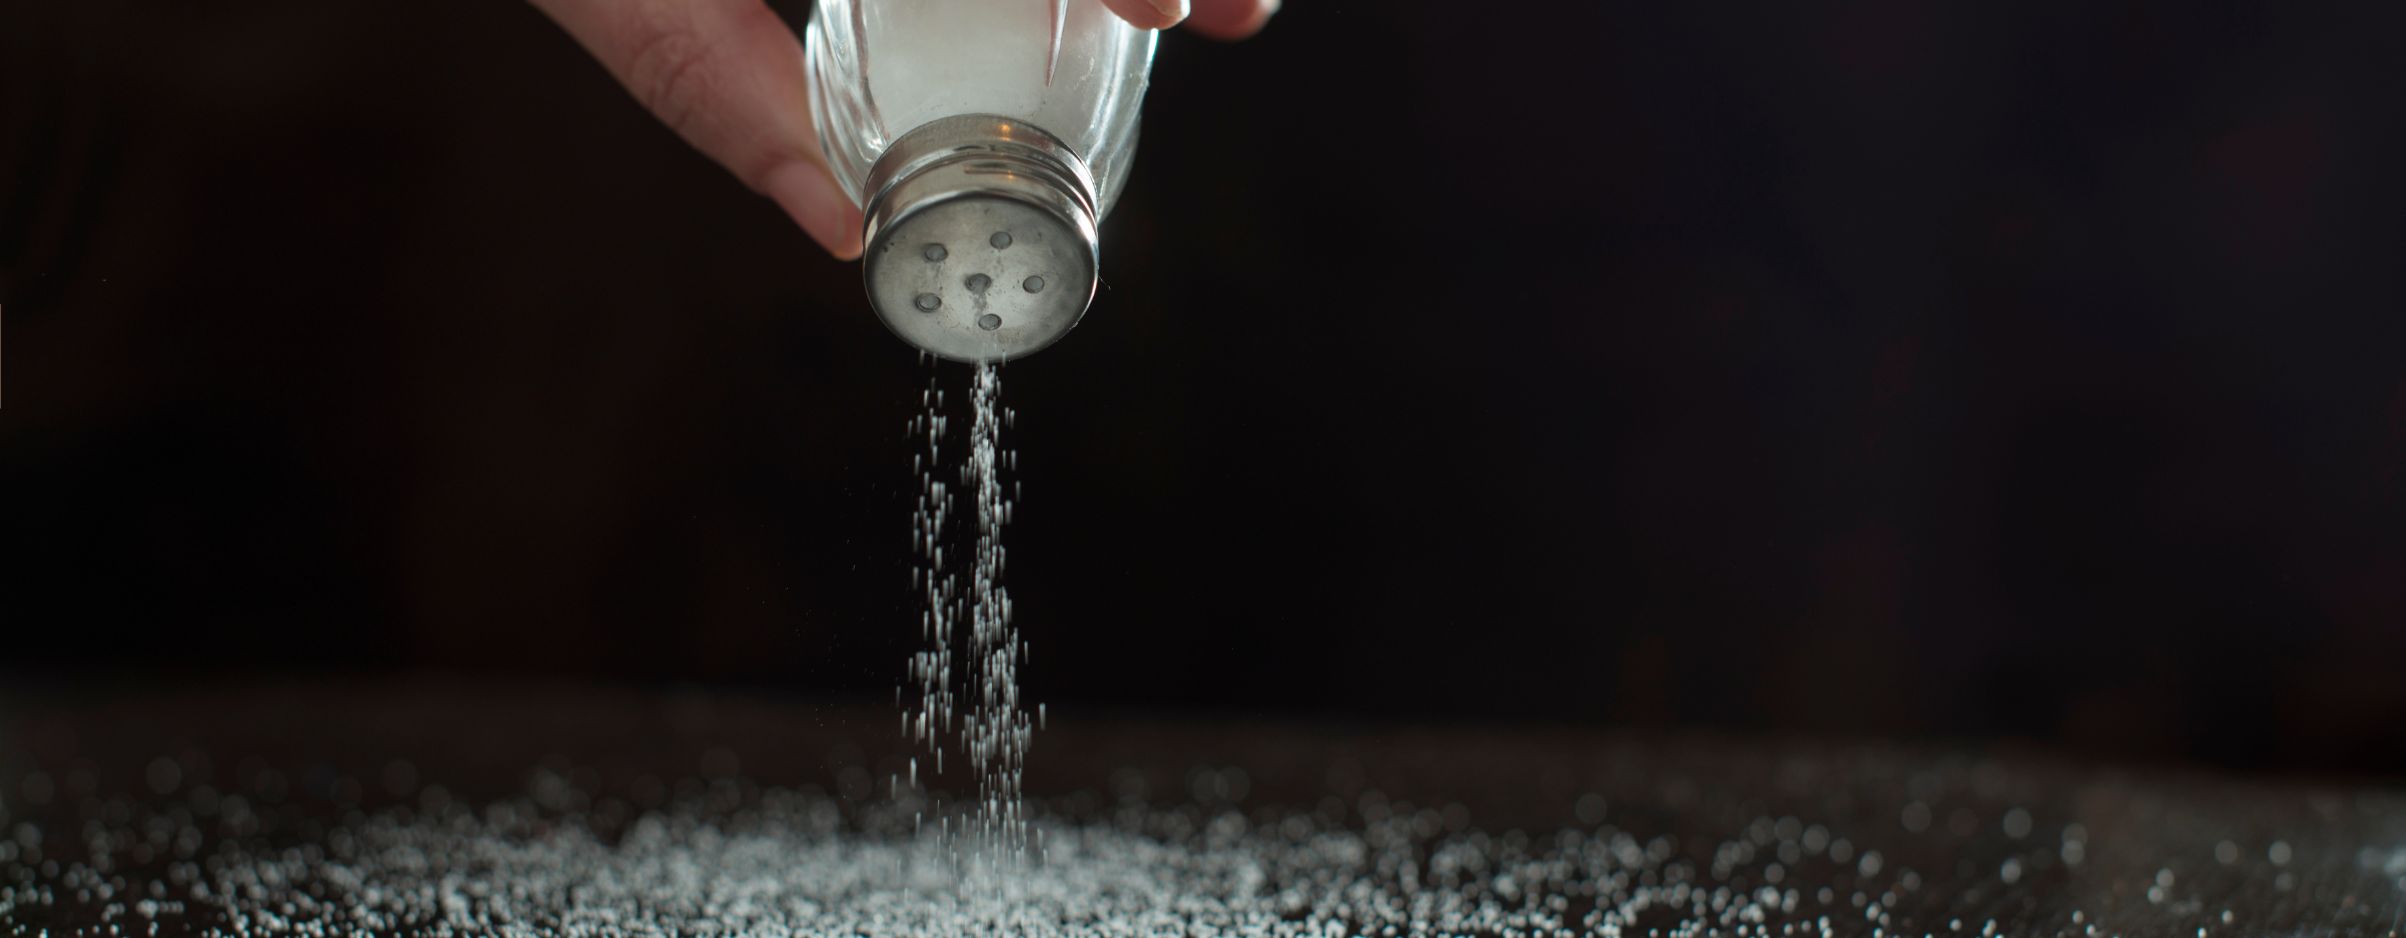 Dedos sujetando un salero con sal cayendo para ilustrar la necesidad de reducir el consumo de sal.